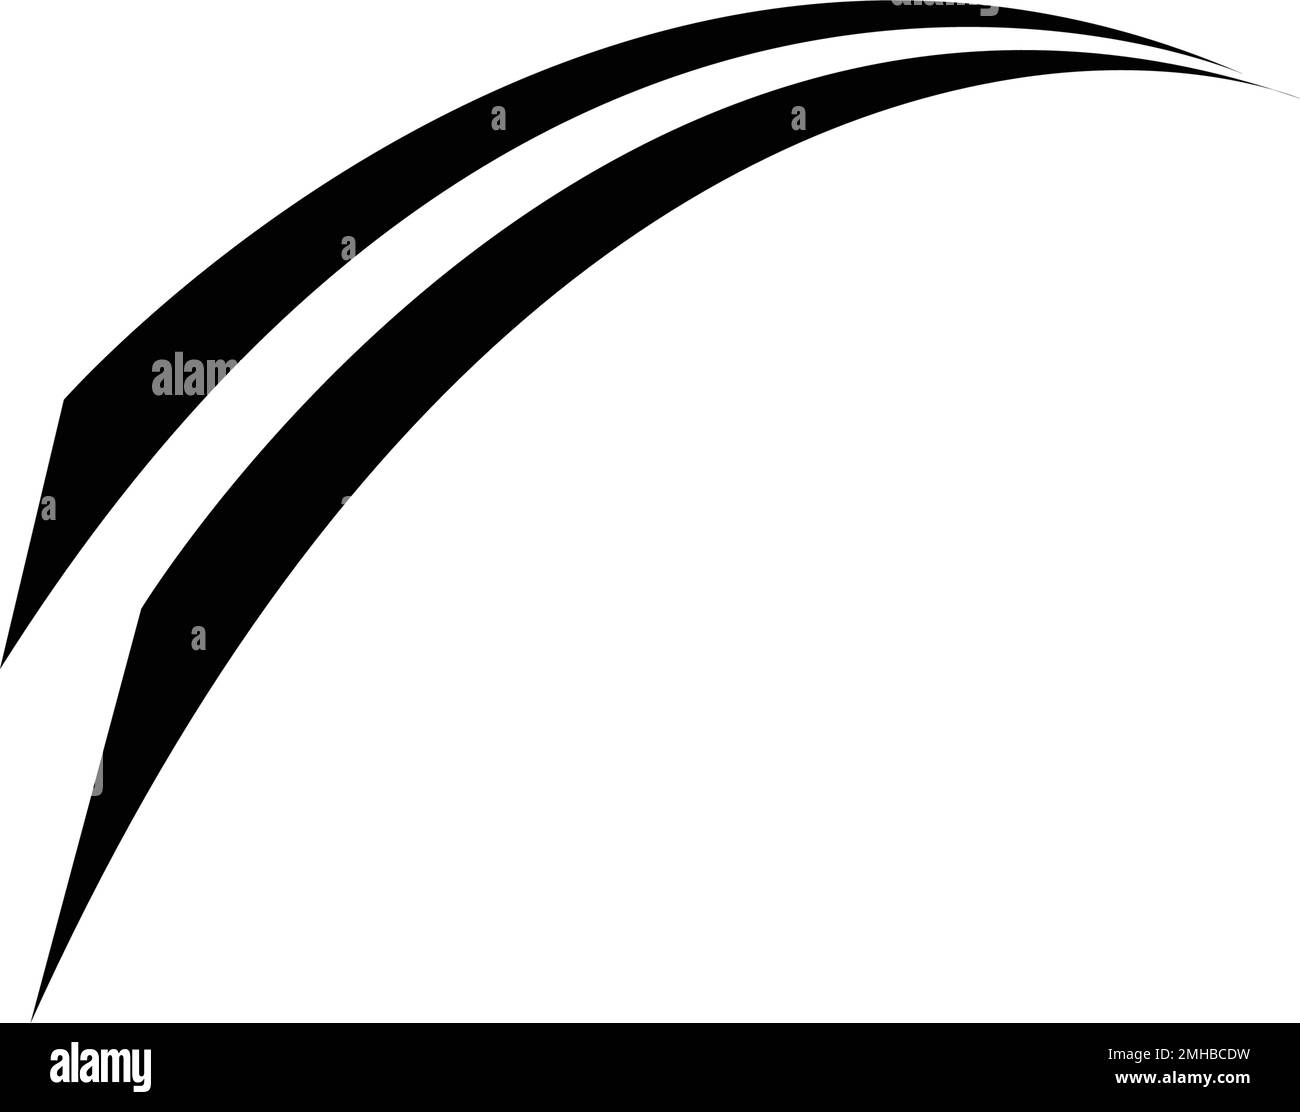 black rail logo illustration design Stock Vector